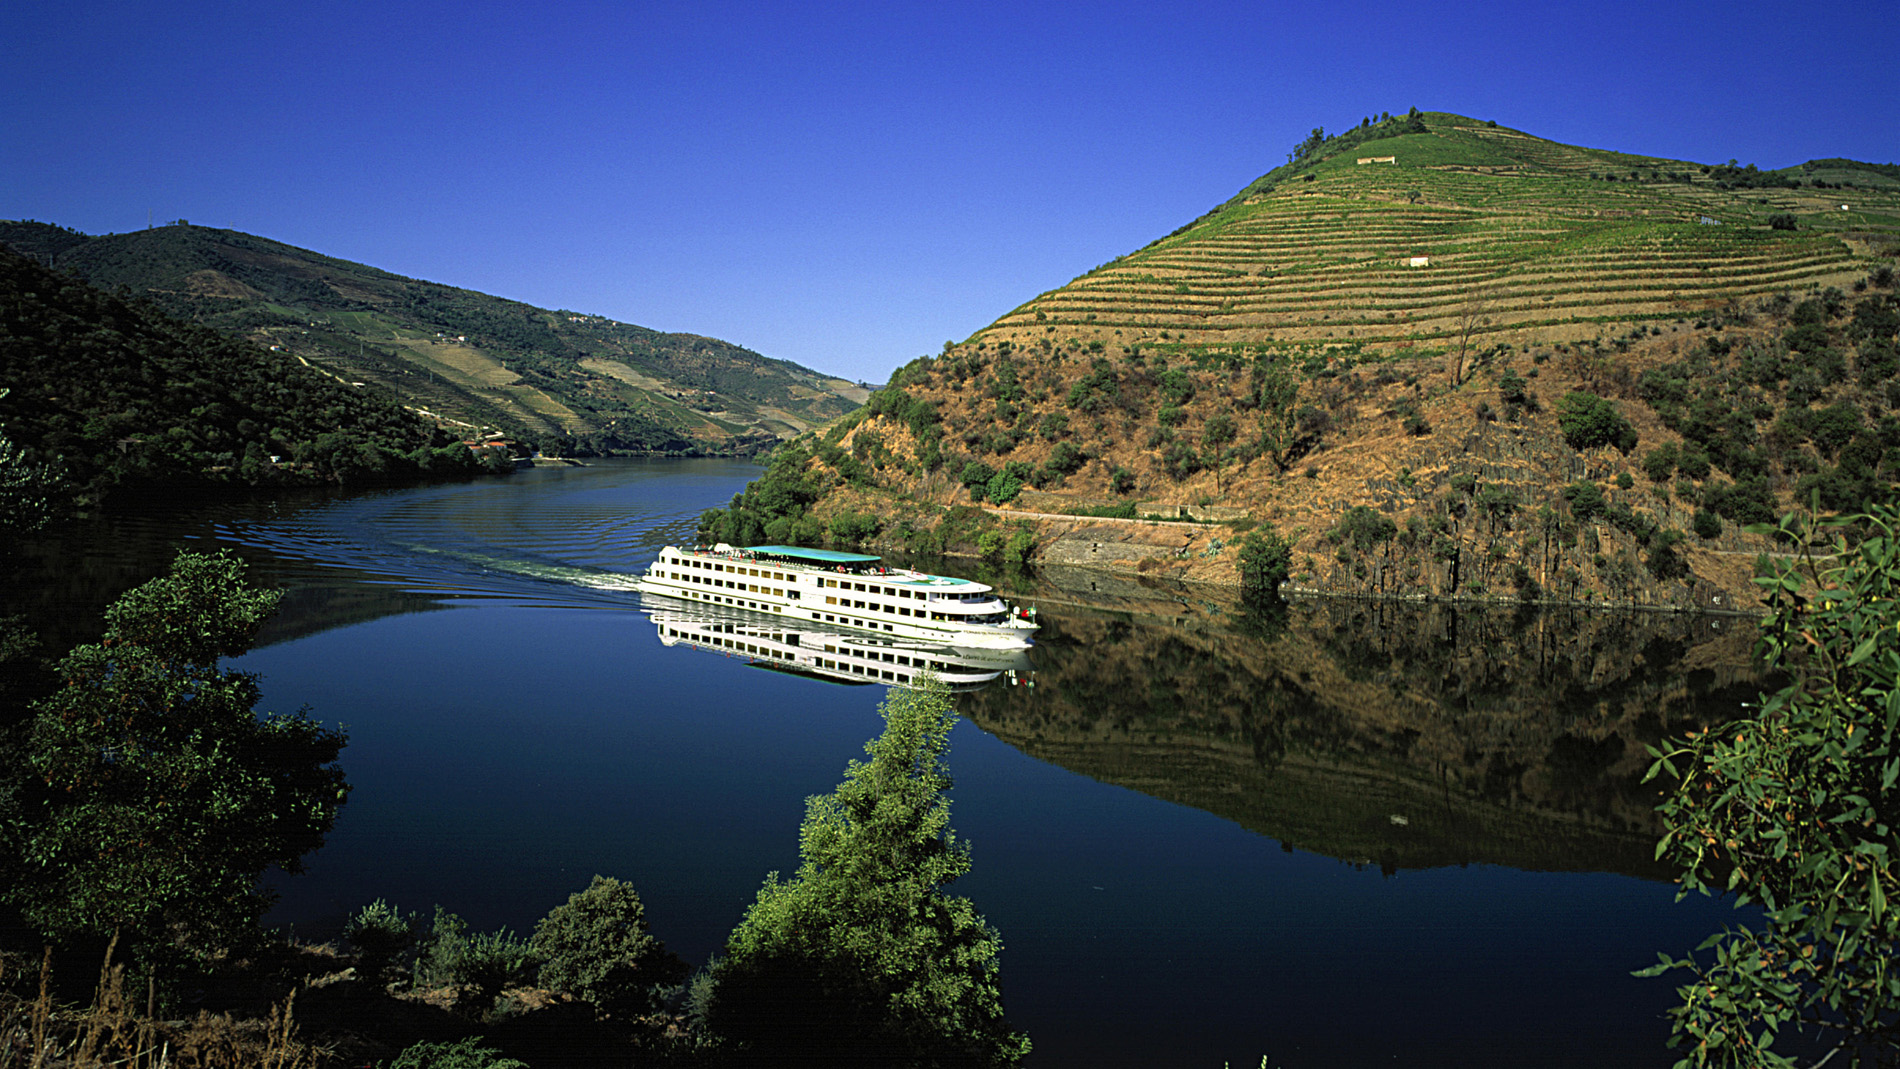 Portugal's Douro River flows like liquid gold | CNN Travel